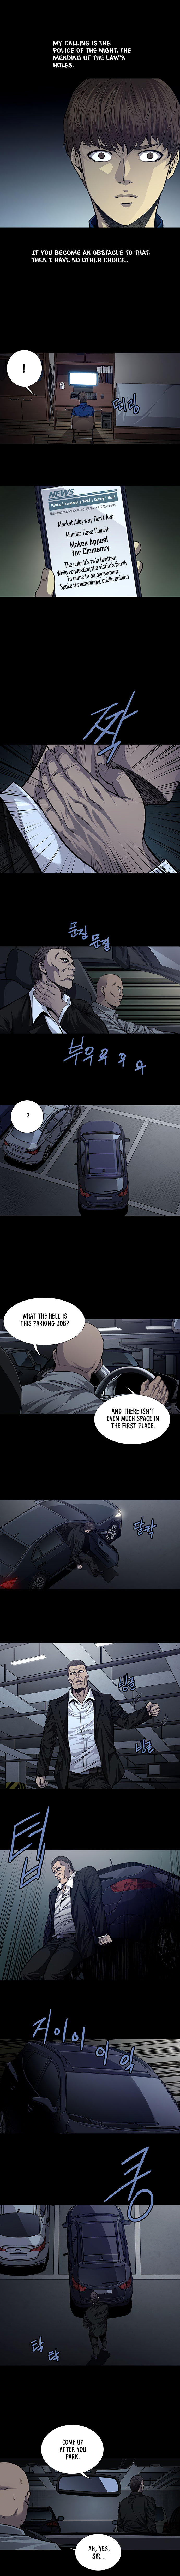 Vigilante - Chapter 35 Page 2